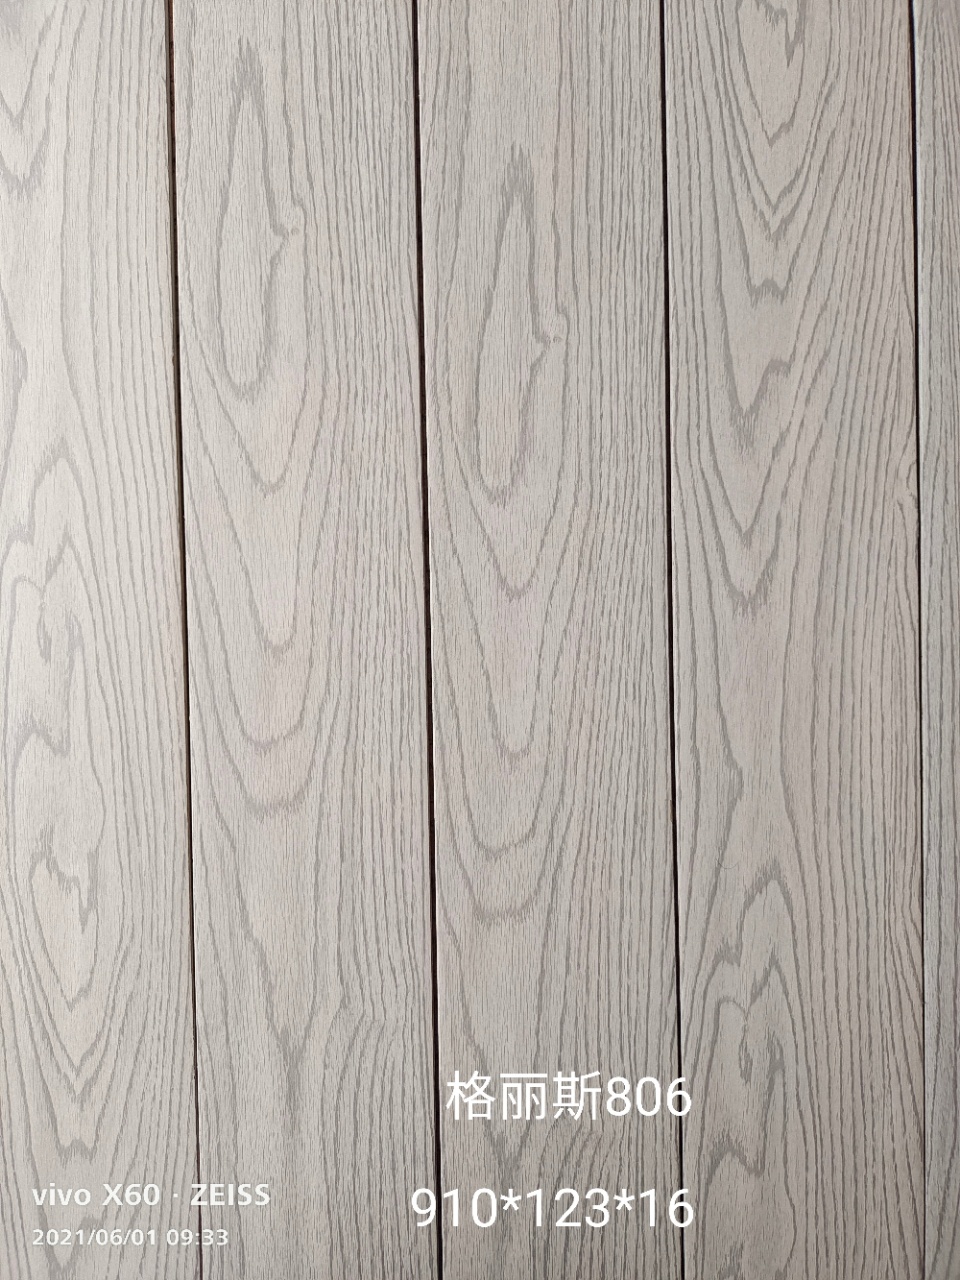 原木地板 木纹实木地板 实木地板厂家 欧式木地板 品瑞地板1